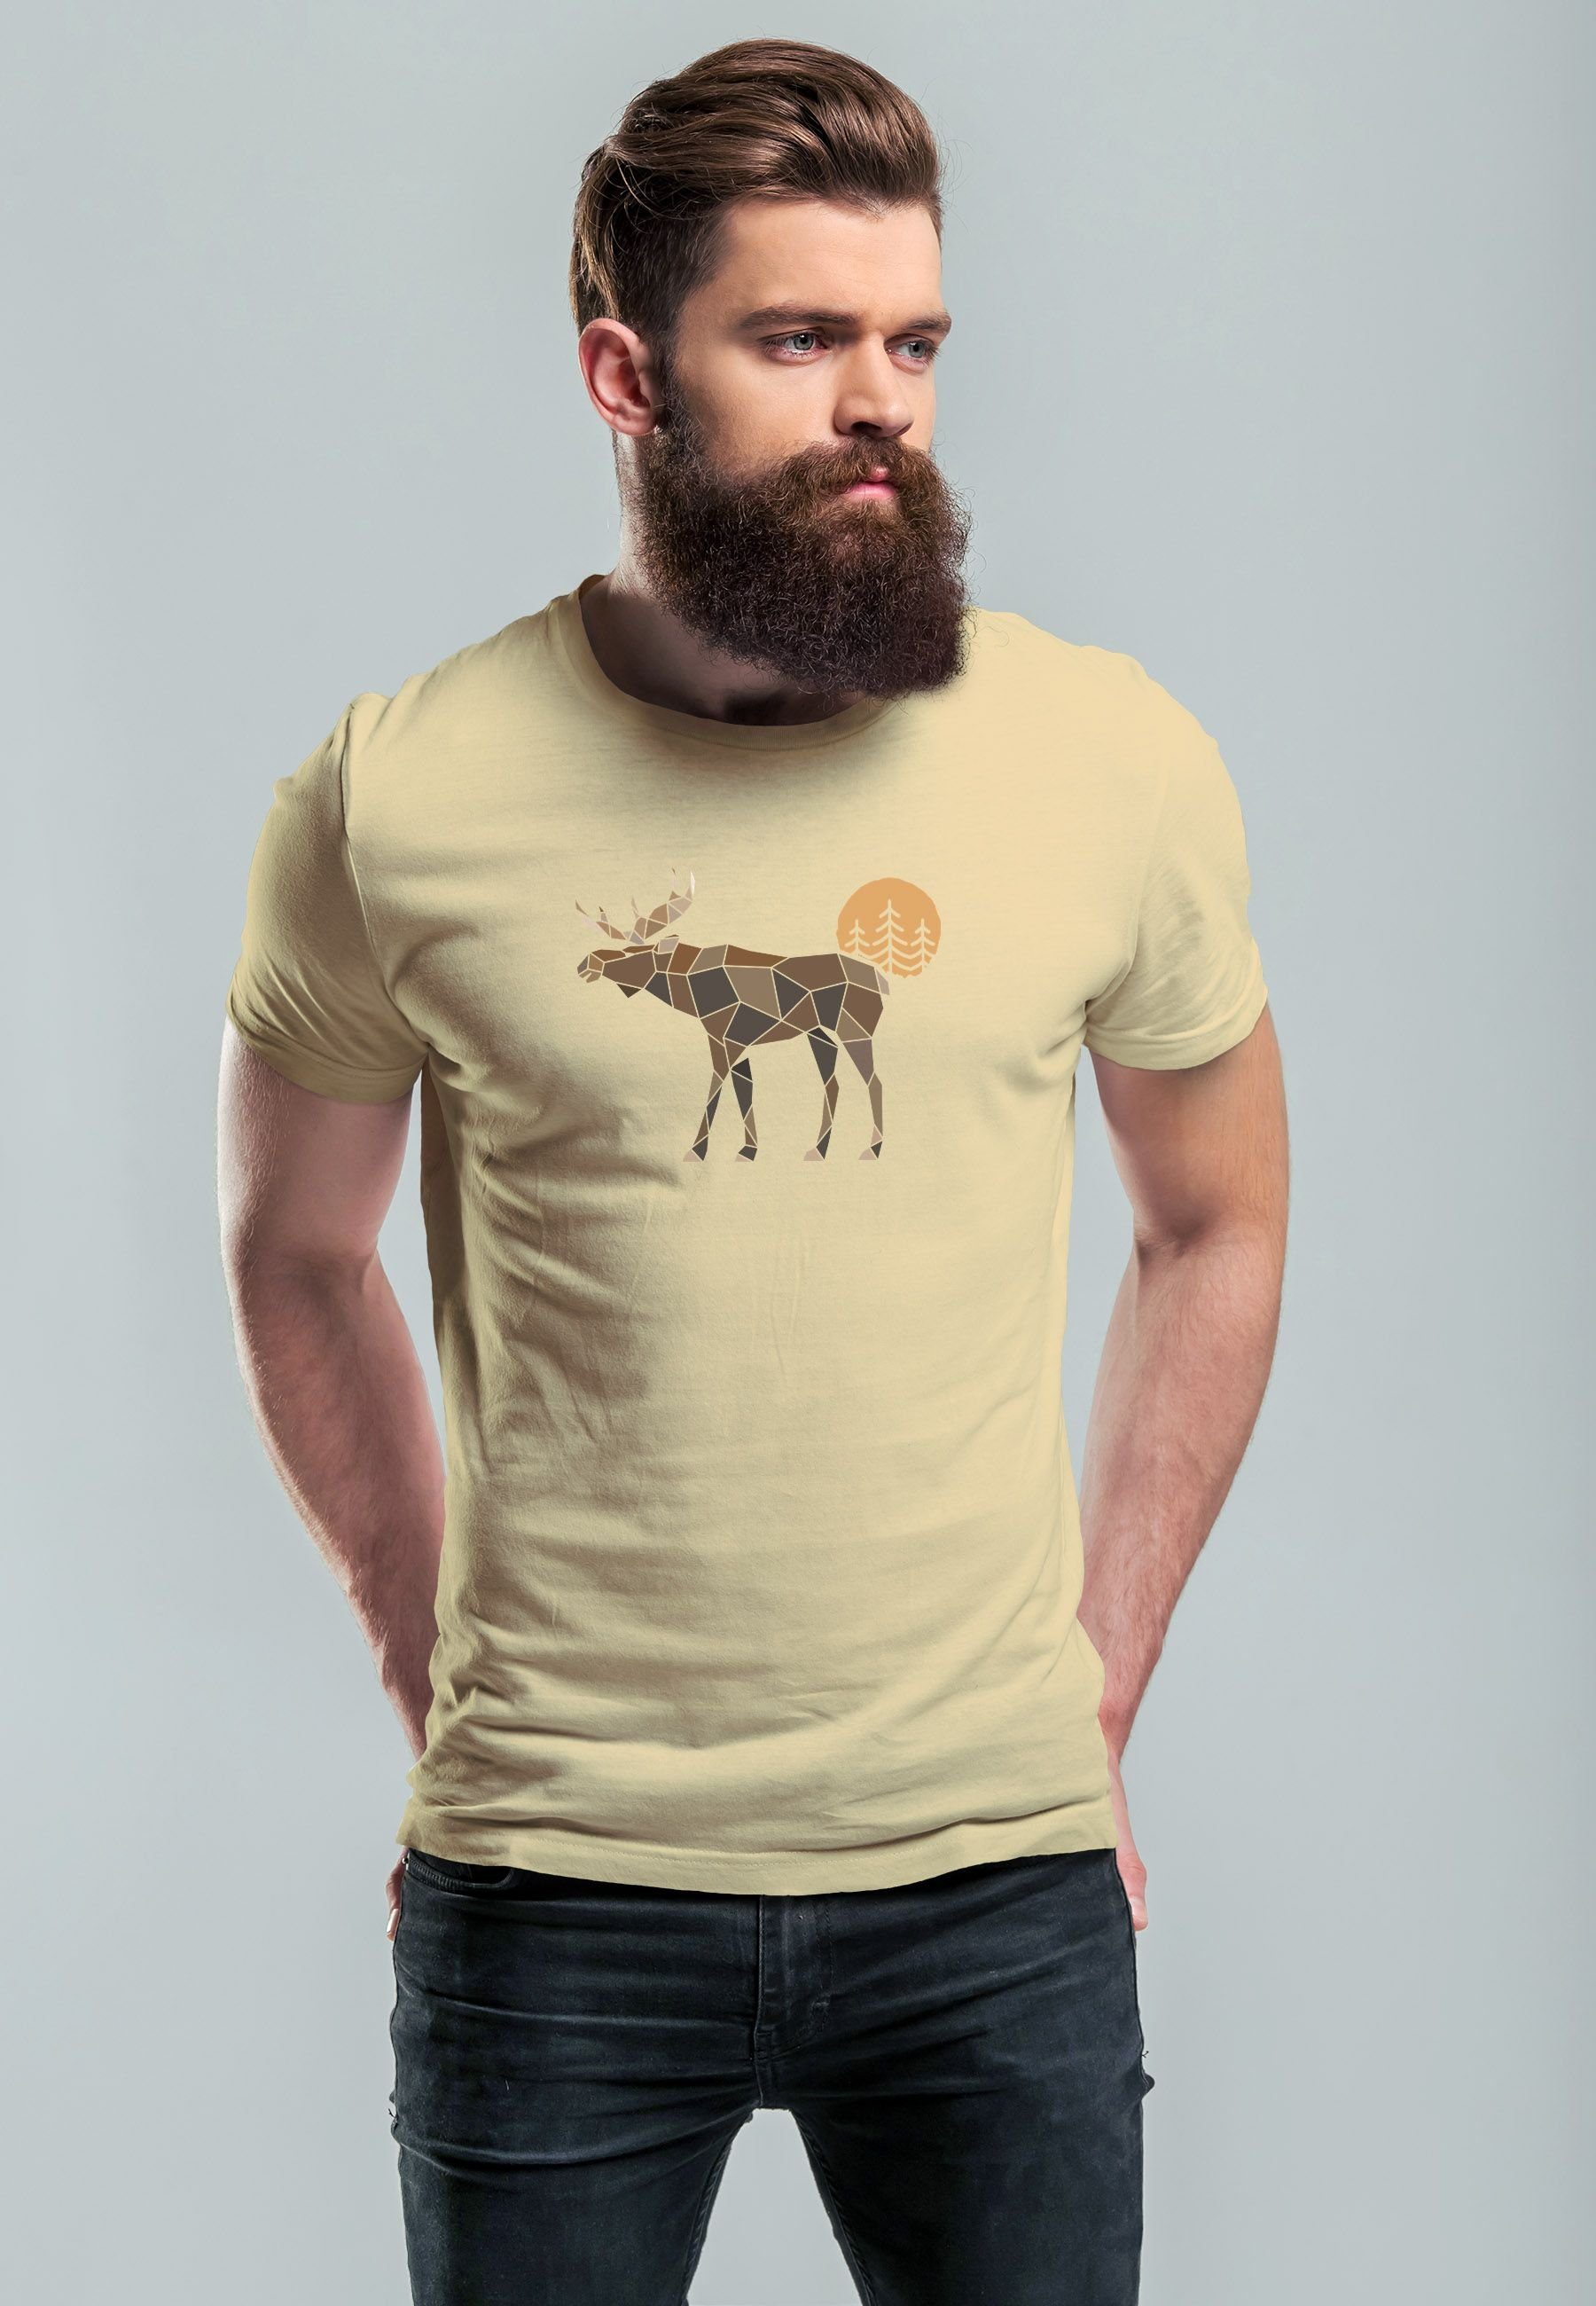 Neverless Print-Shirt Herren T-Shirt Shirt Printshirt Polygon mit Outdoor Moti mit Elch Aufdruck natur Print